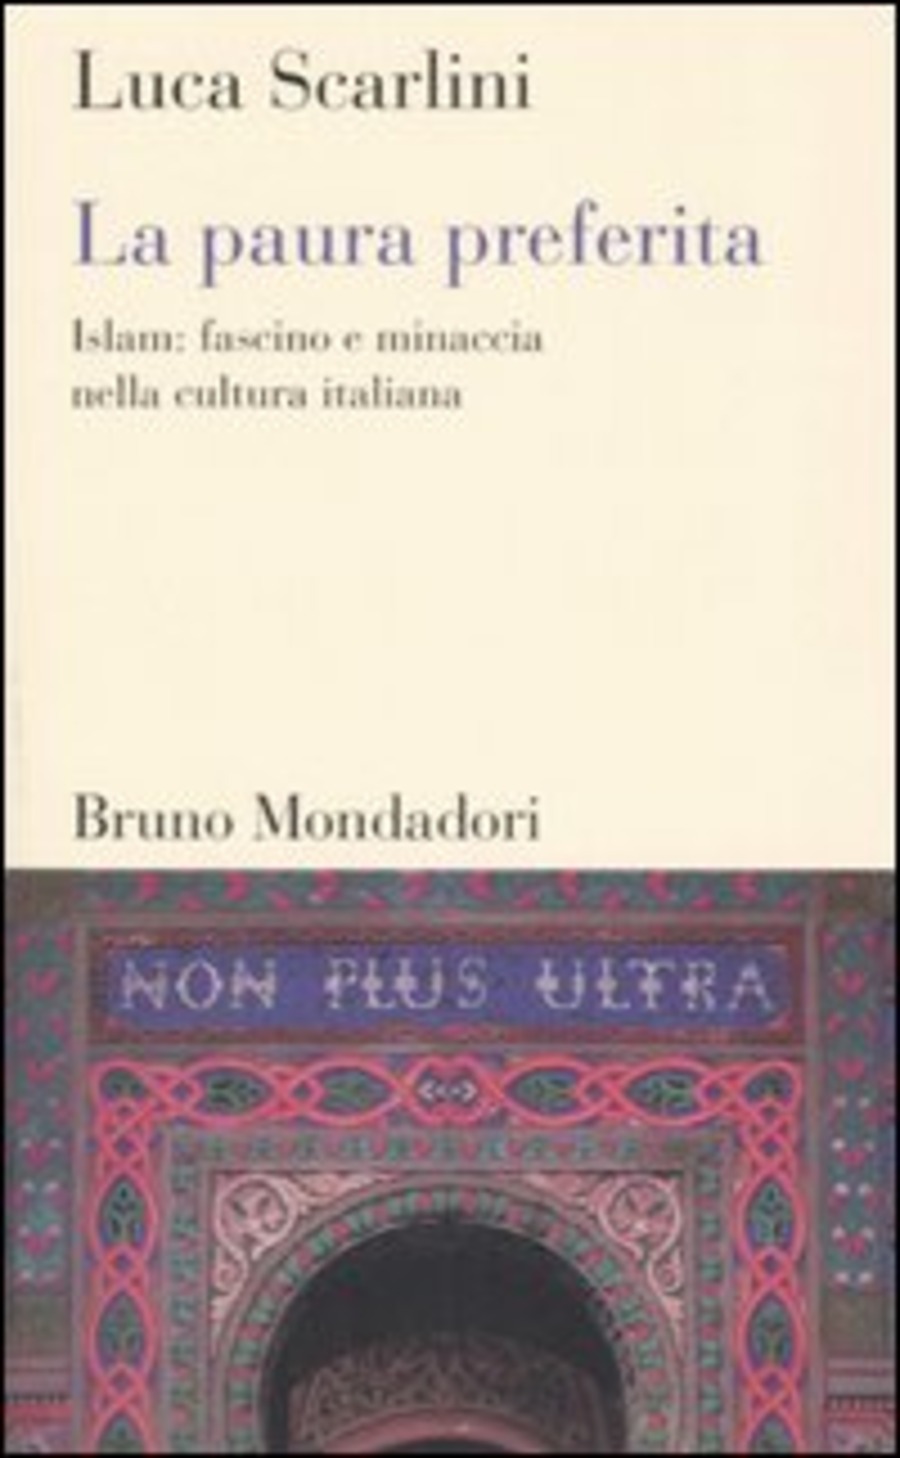 La paura preferita. Islam: fascino e minaccia nella cultura italiana